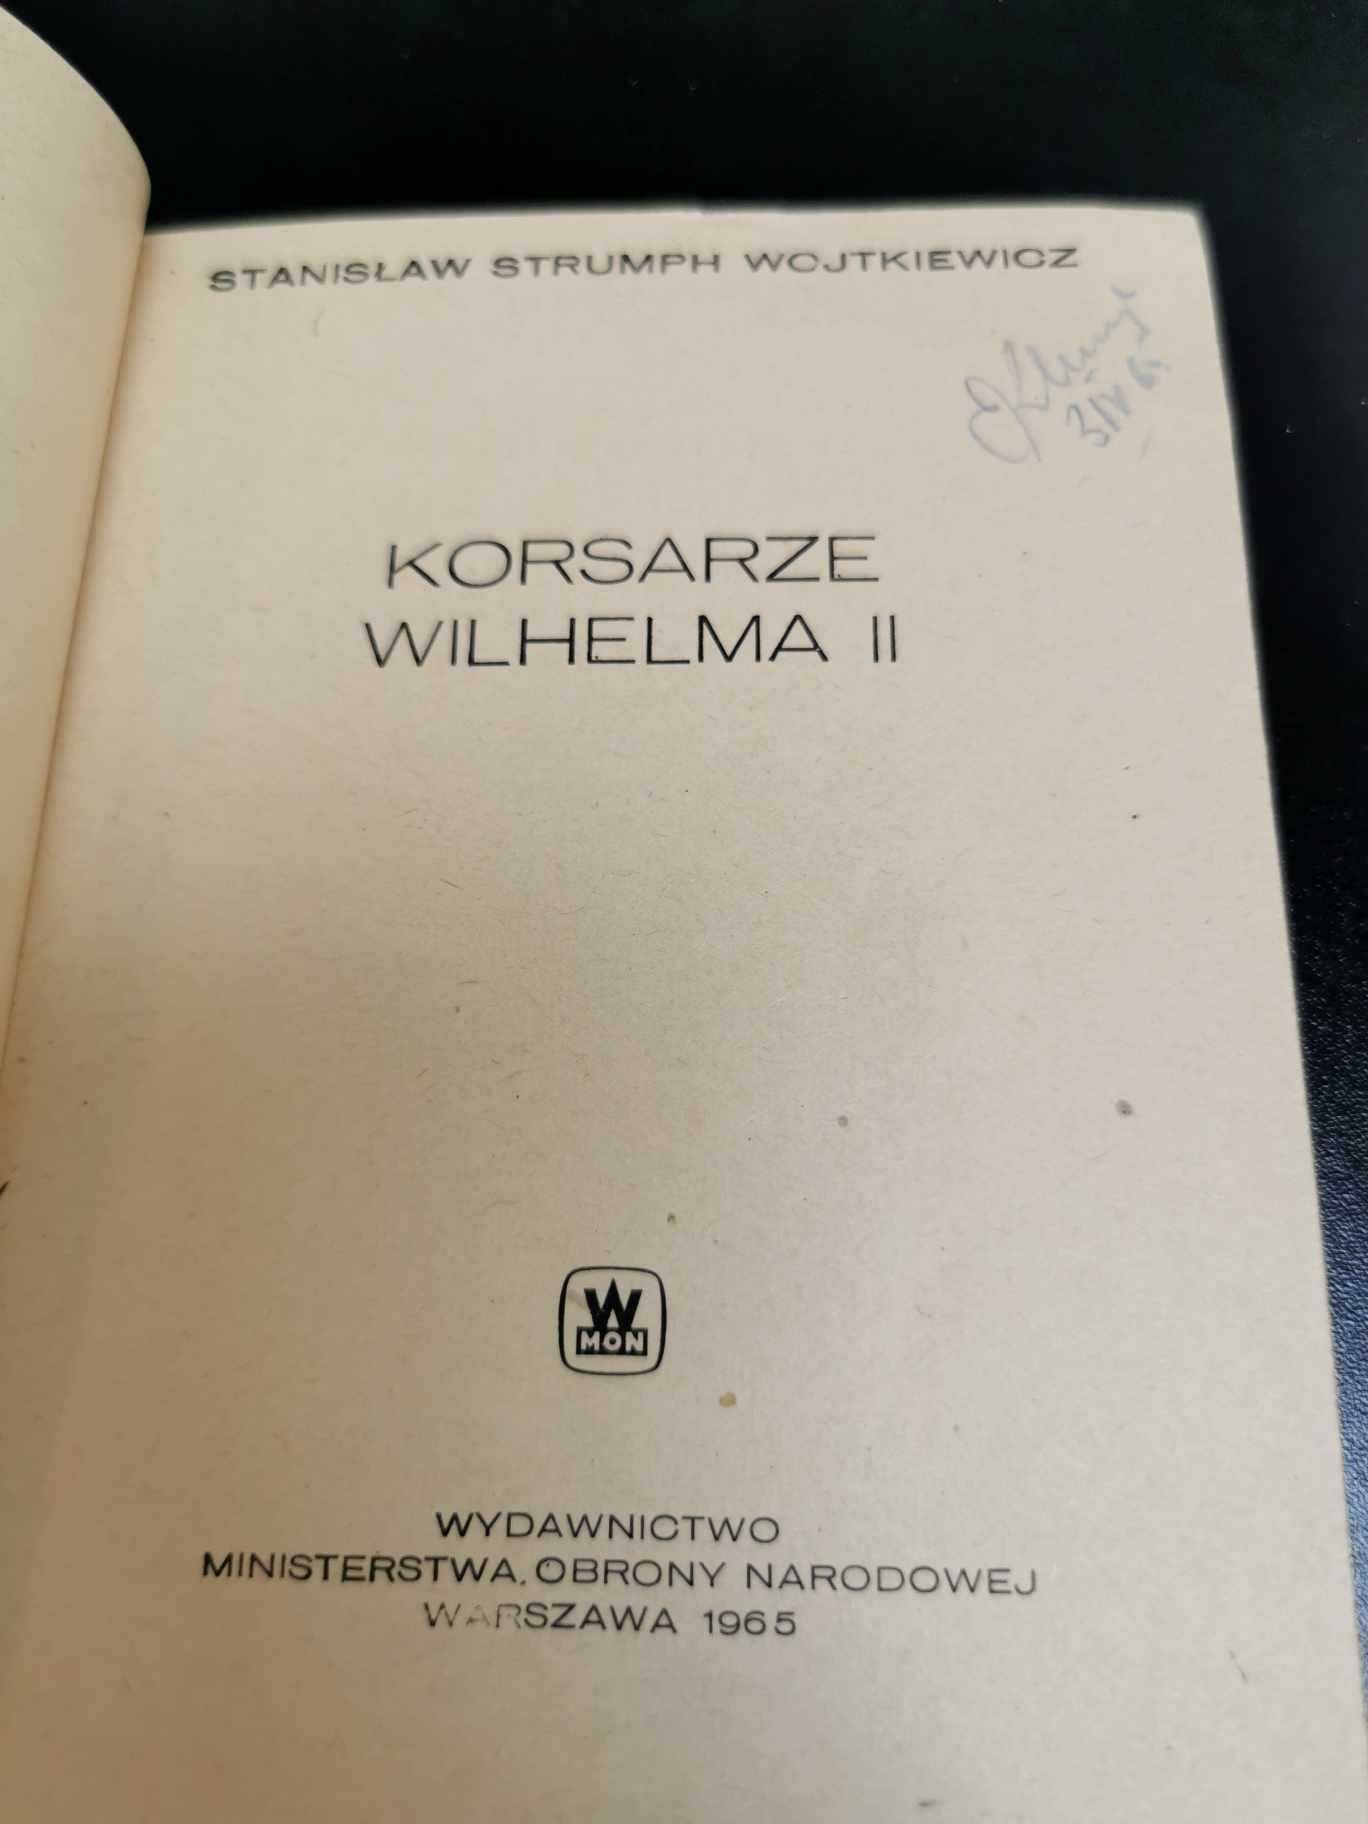 Korsarze Wilhelma II Sensacje 20 wieku S. Wojtkiewicz